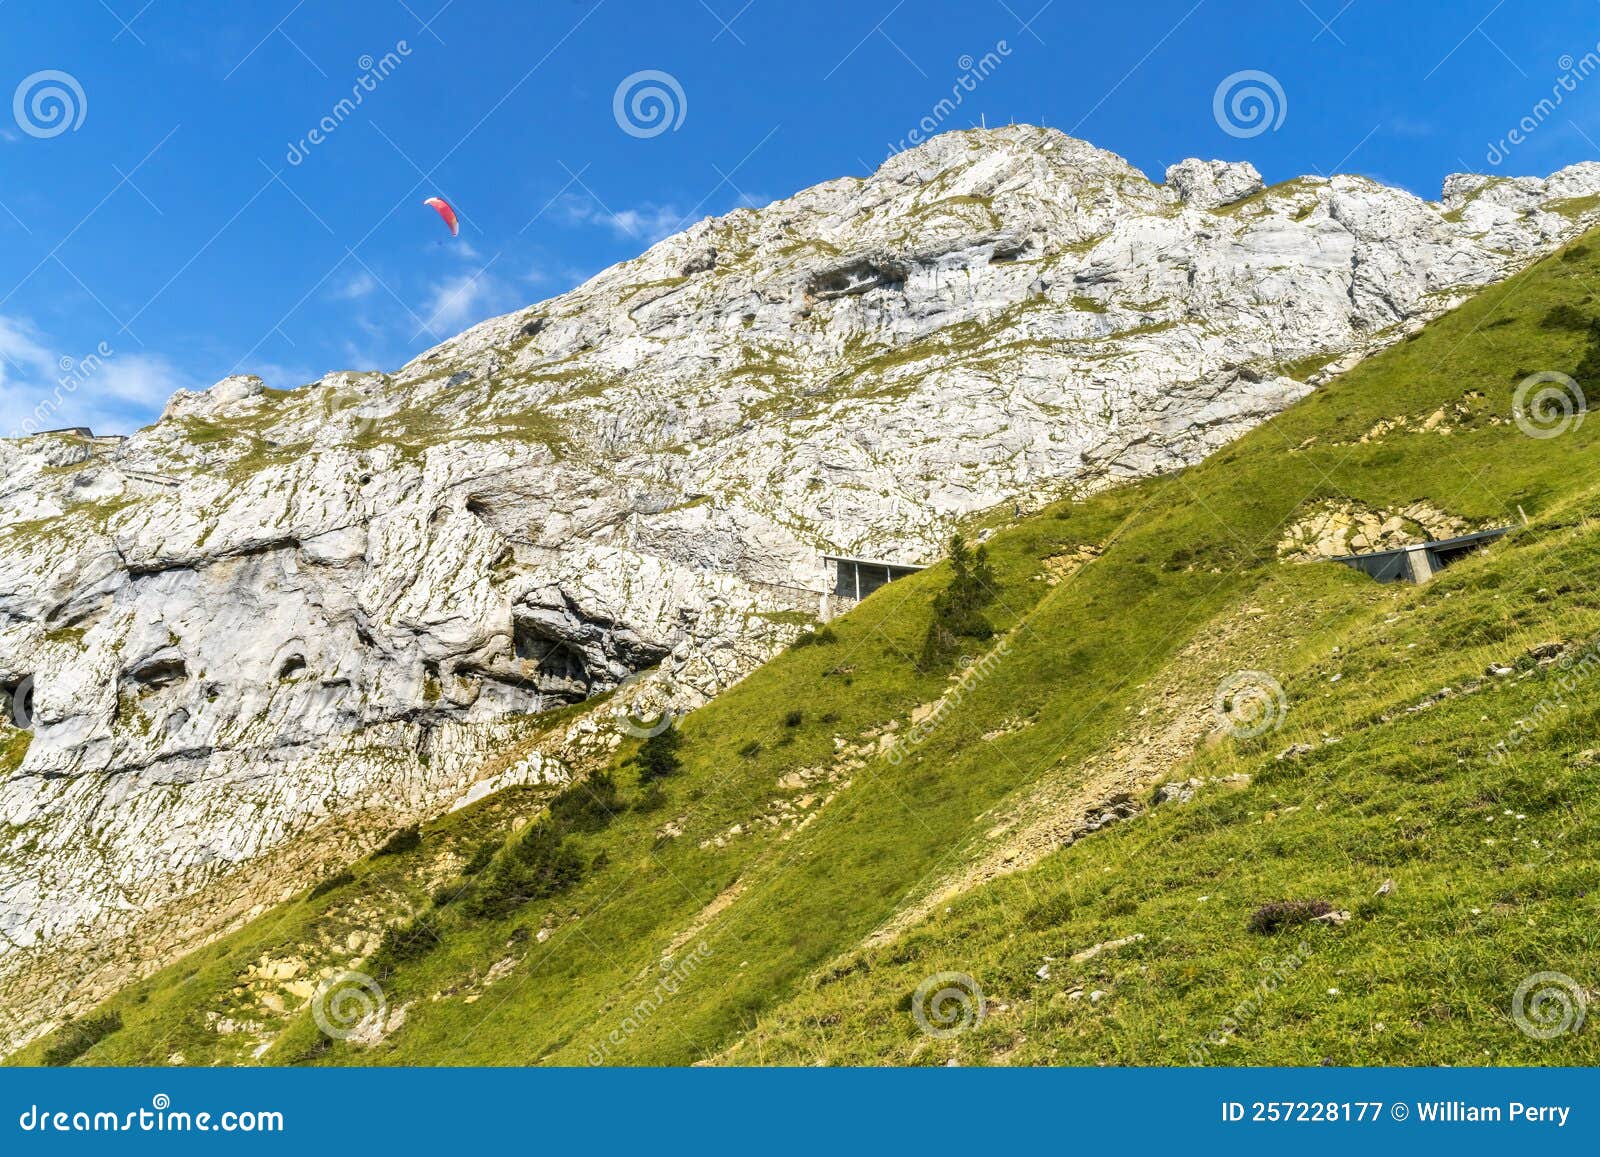 pink parasail rock cliffs pastures climbing mount pilatus lucerne switzerland